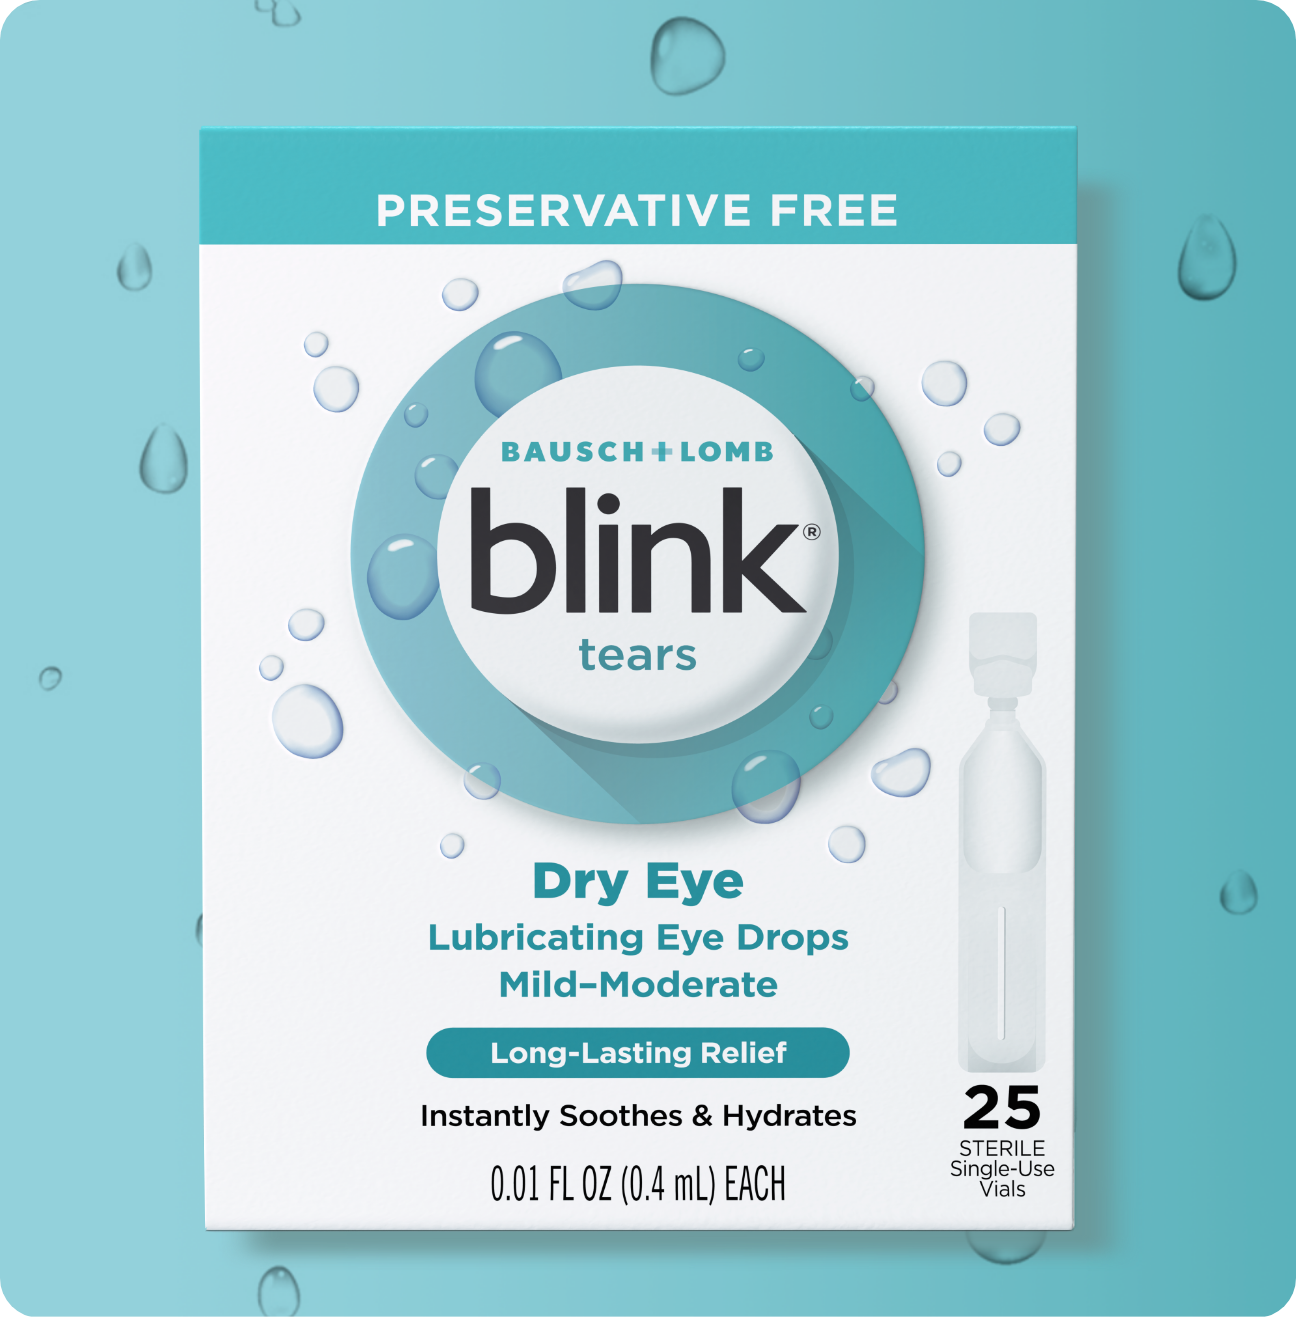 Blink Tears Preservative Free Lubricating Eye Drops package